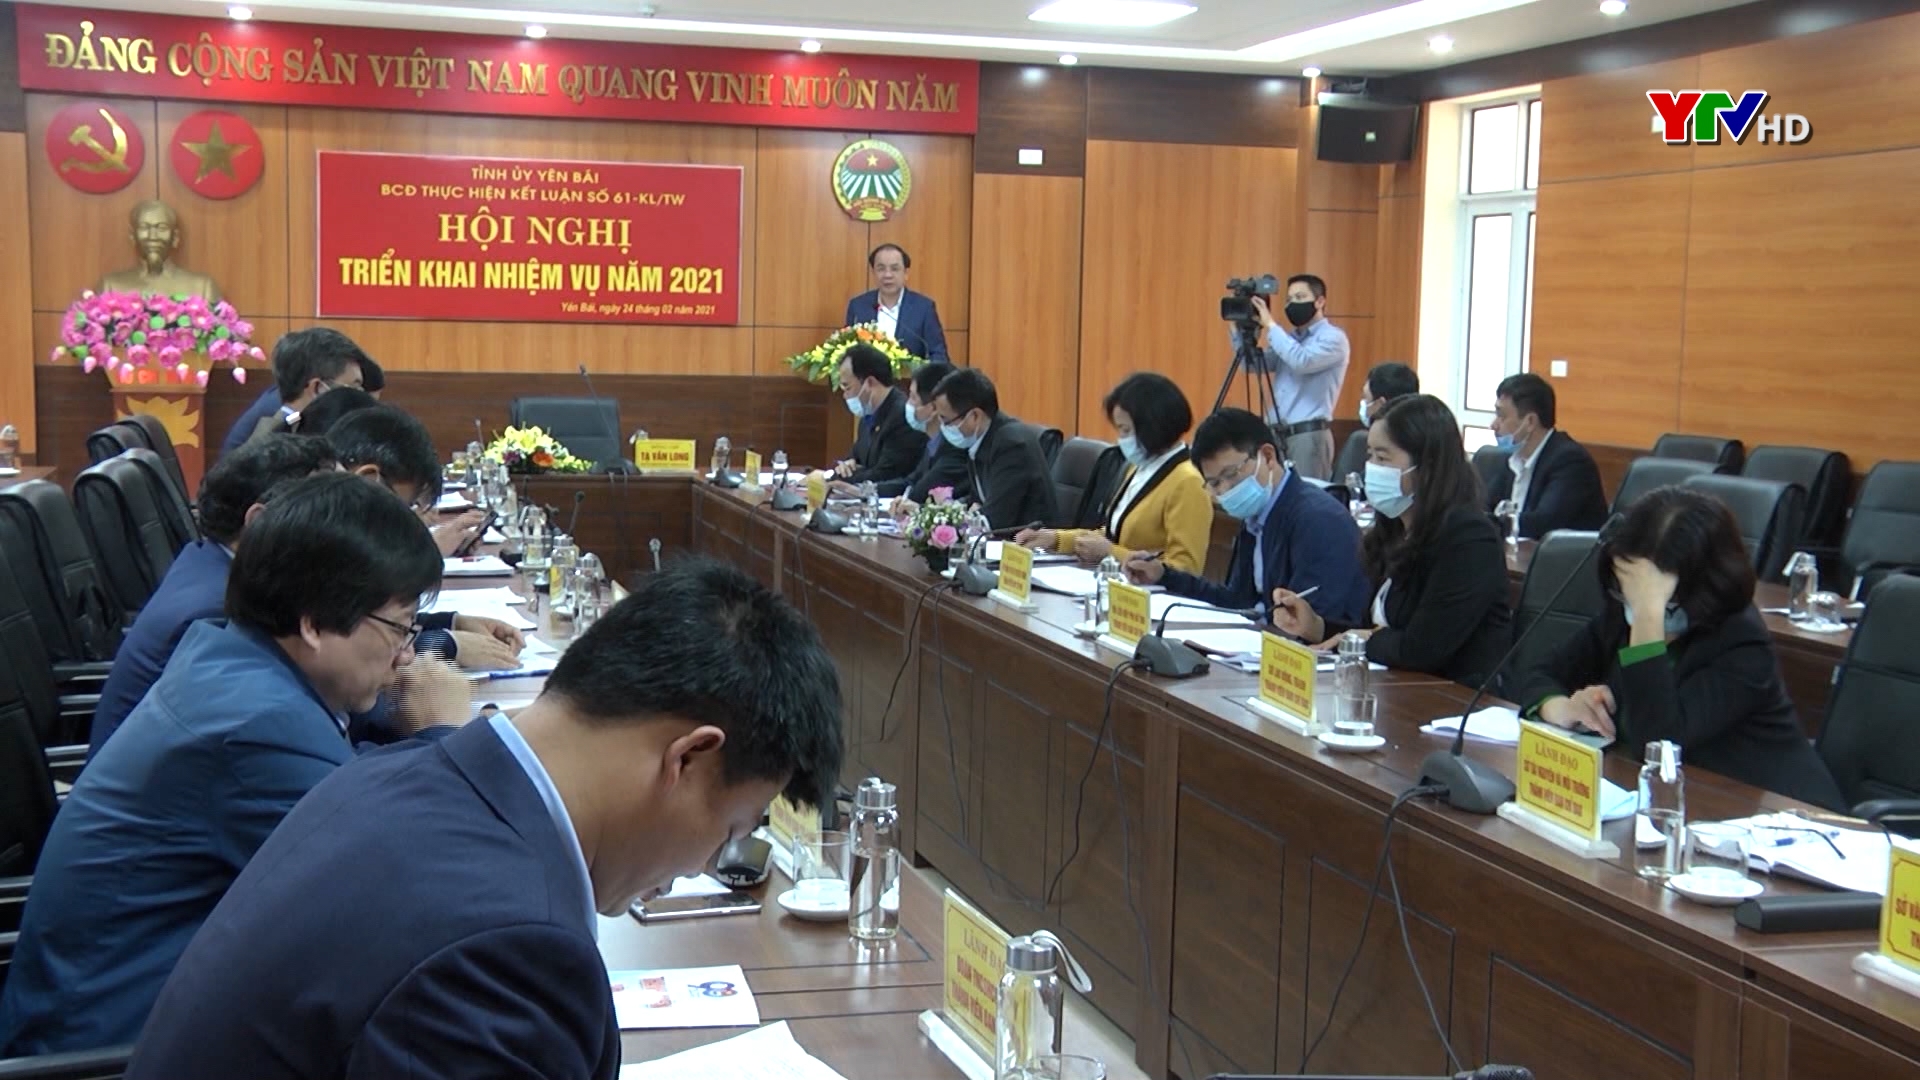 BCĐ thực hiện Kết luận số 61 tỉnh Yên Bái triển khai nhiệm vụ năm 2021